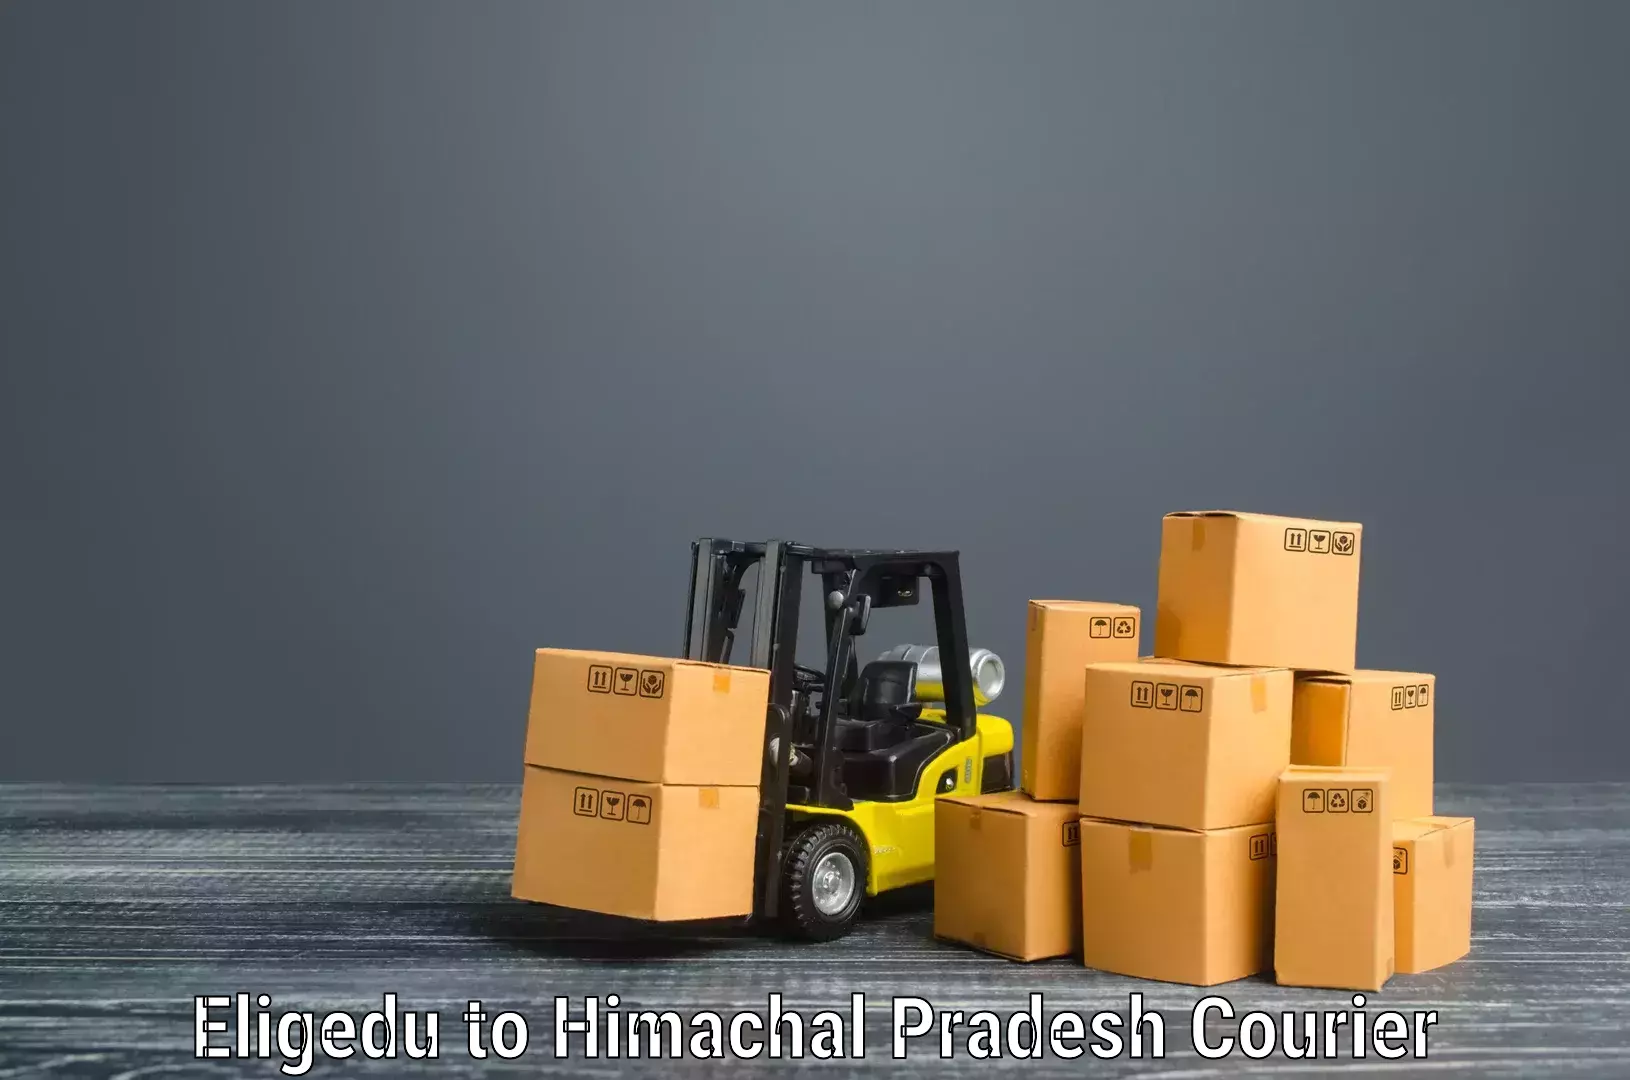 Online household goods transport Eligedu to Shahpur Kangra